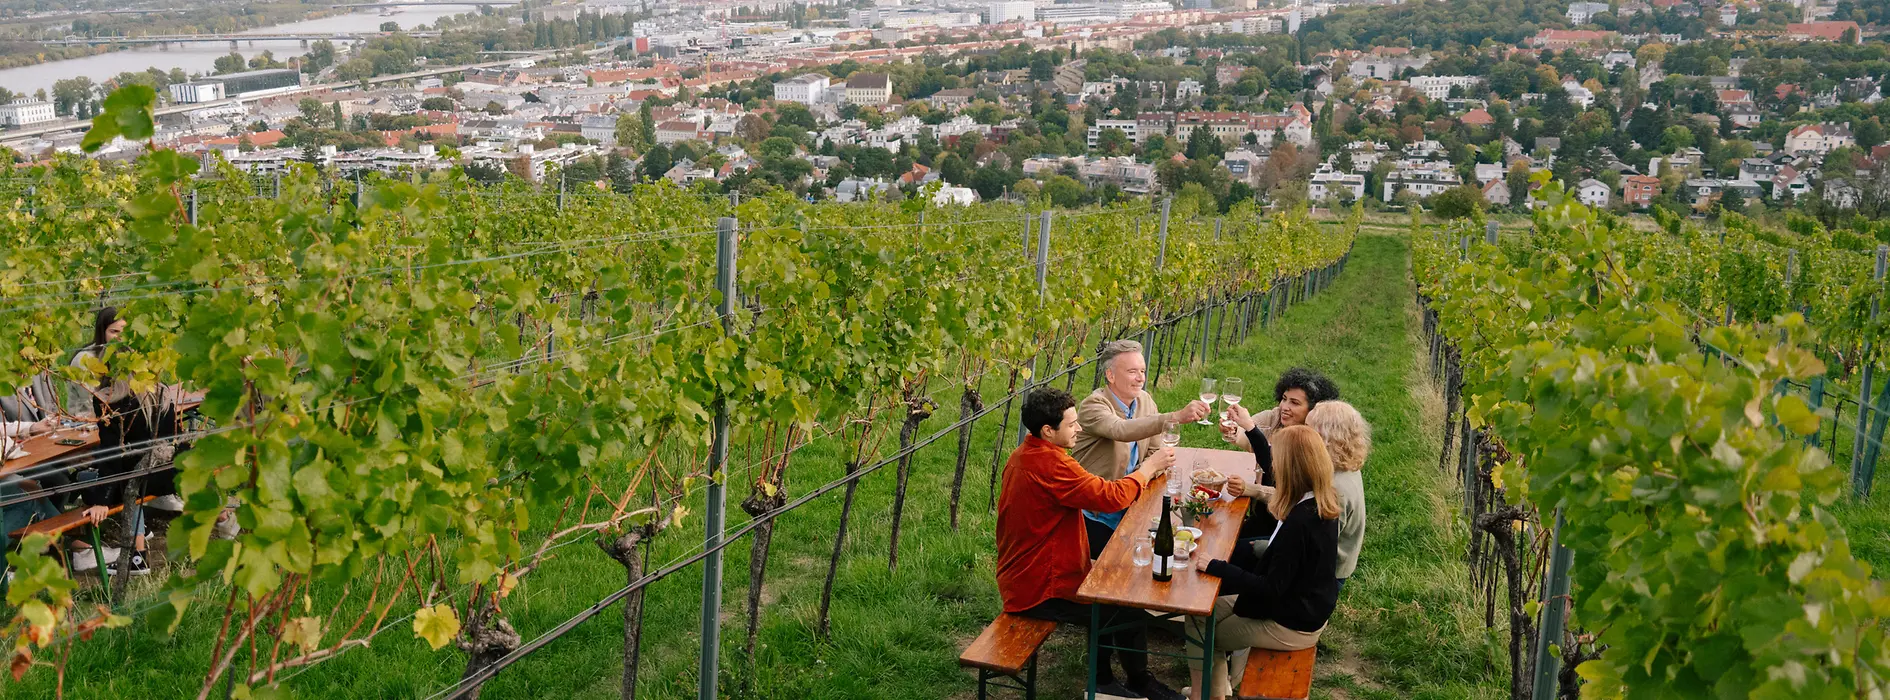 People drinking wine in vineyard